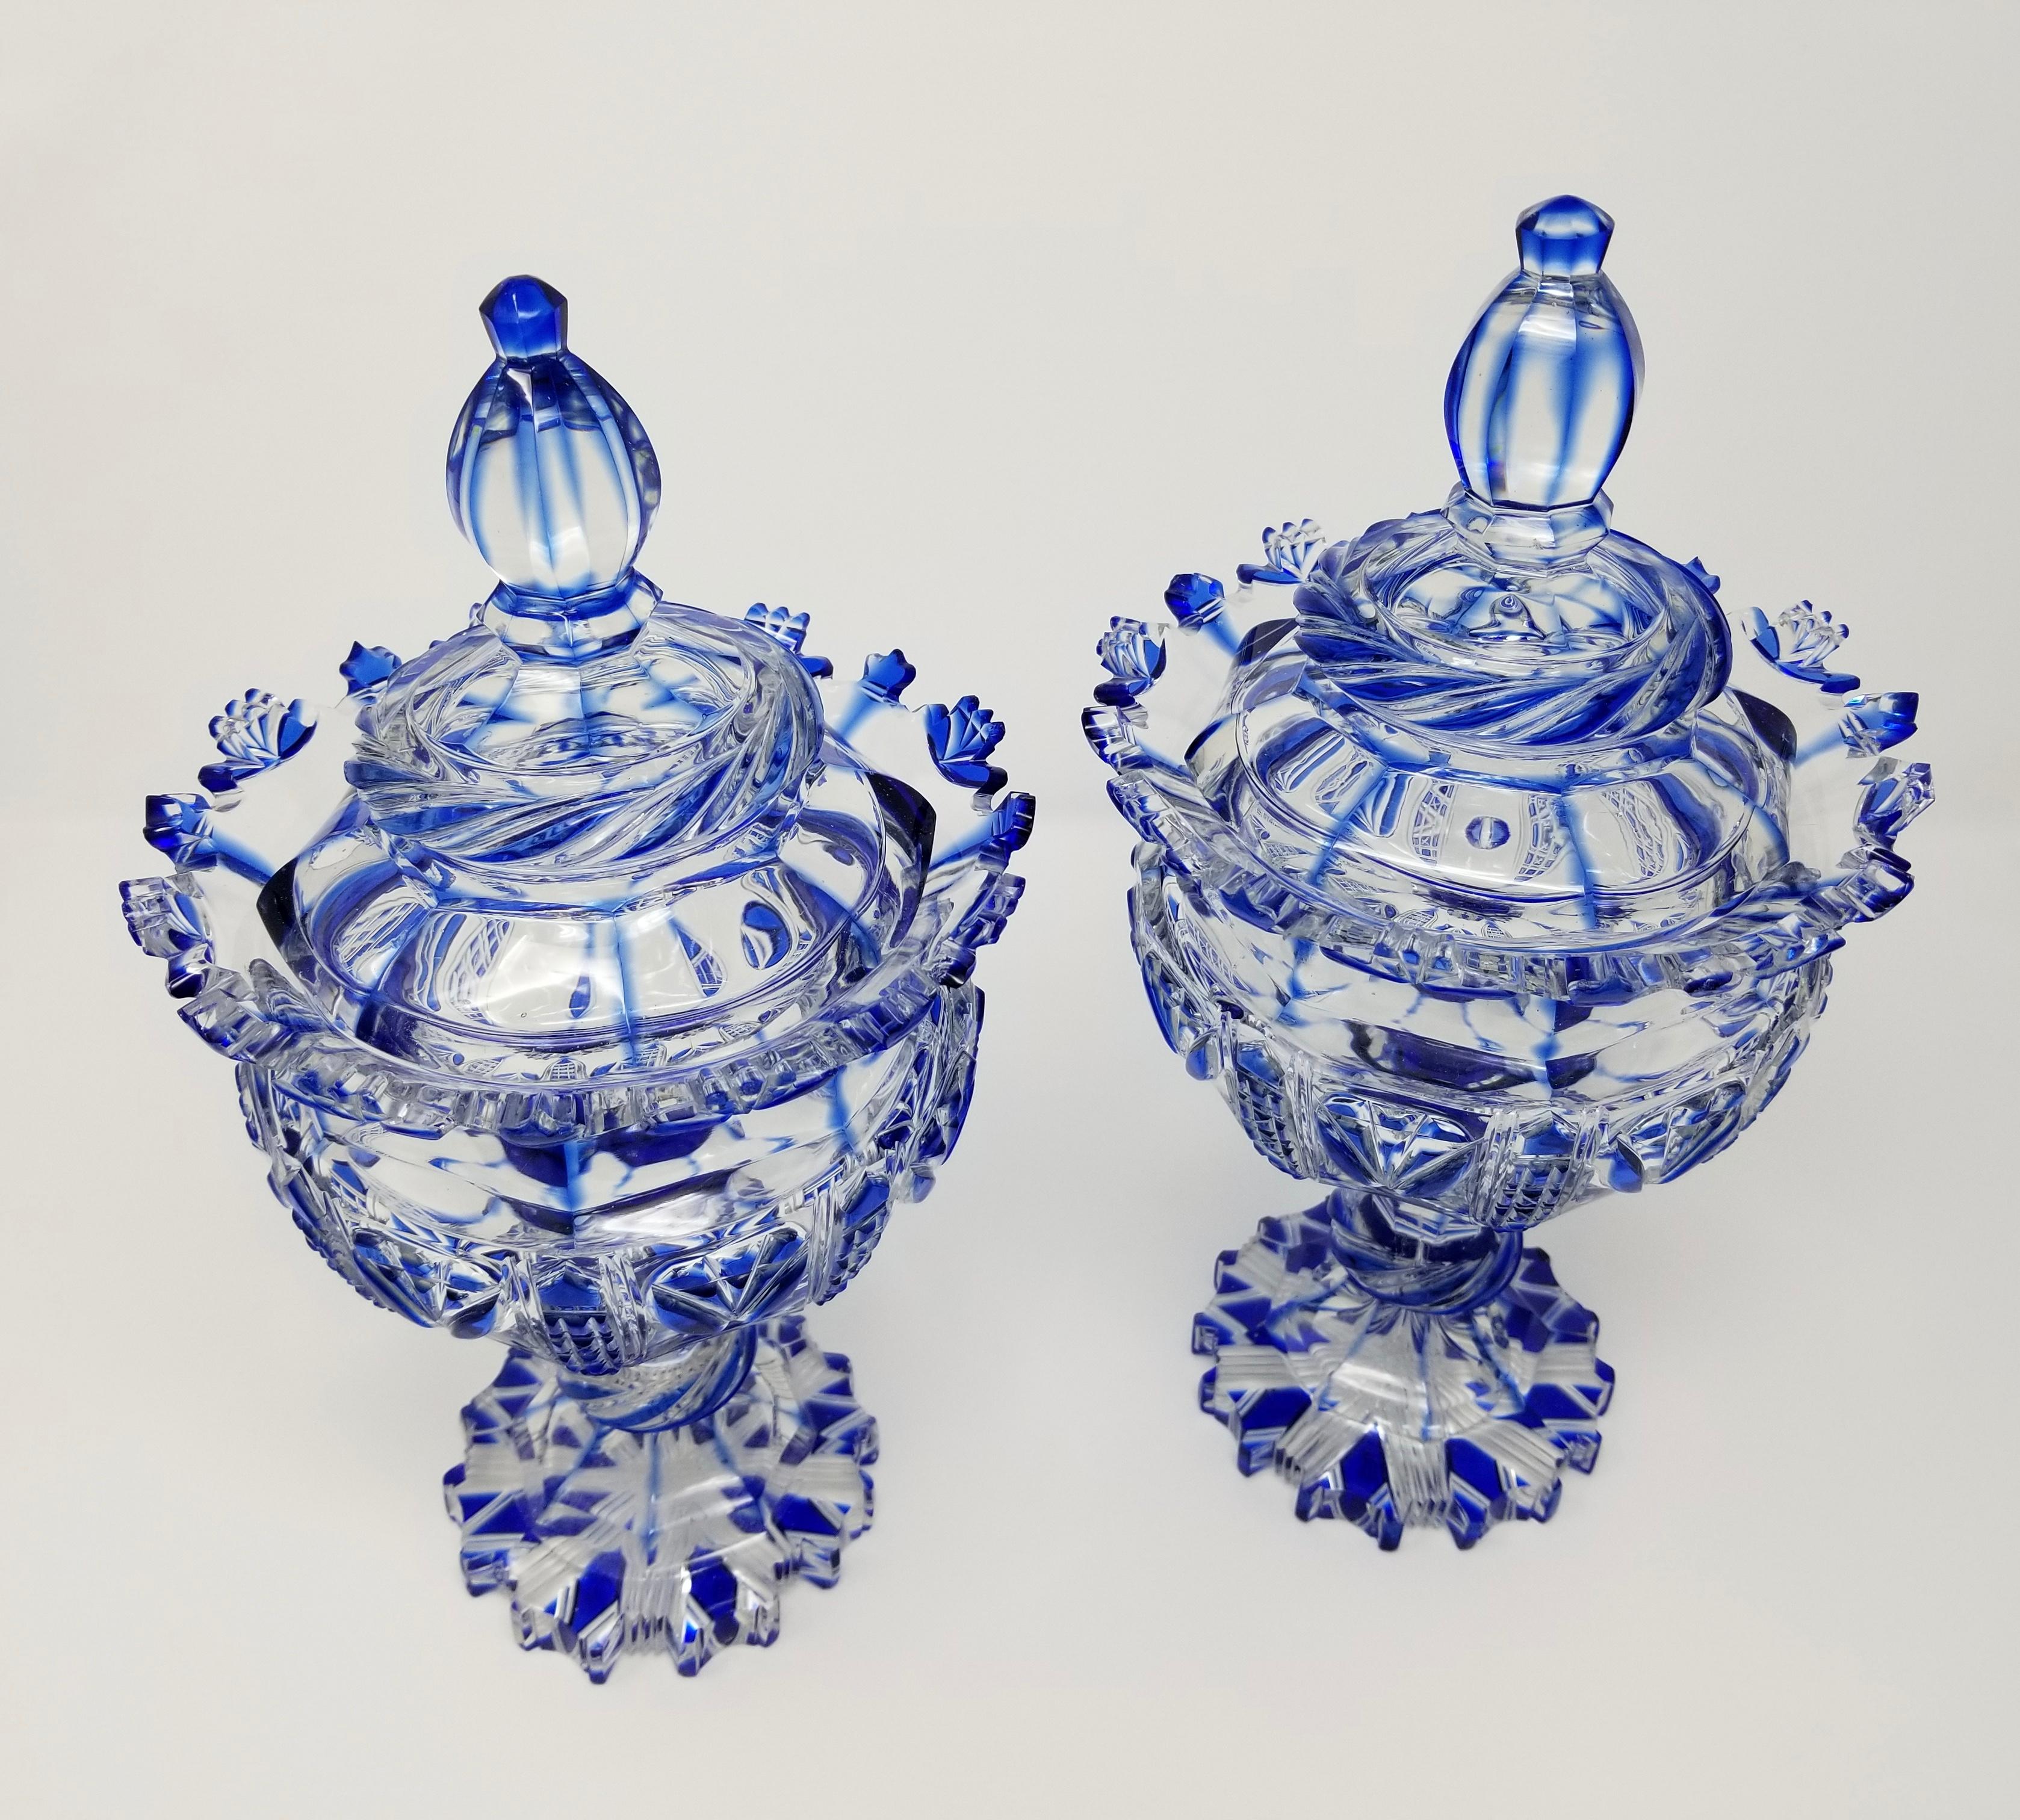 Ein wunderschönes Paar russischer kobaltblauer Urnen/Vasen im Louis-XVI-Stil des 19. Jahrhunderts mit handgeschliffenen Diamanten in klarem Kristall, die der kaiserlich-russischen Glasherstellung zugeschrieben werden. Jede Urne ist mit zwei